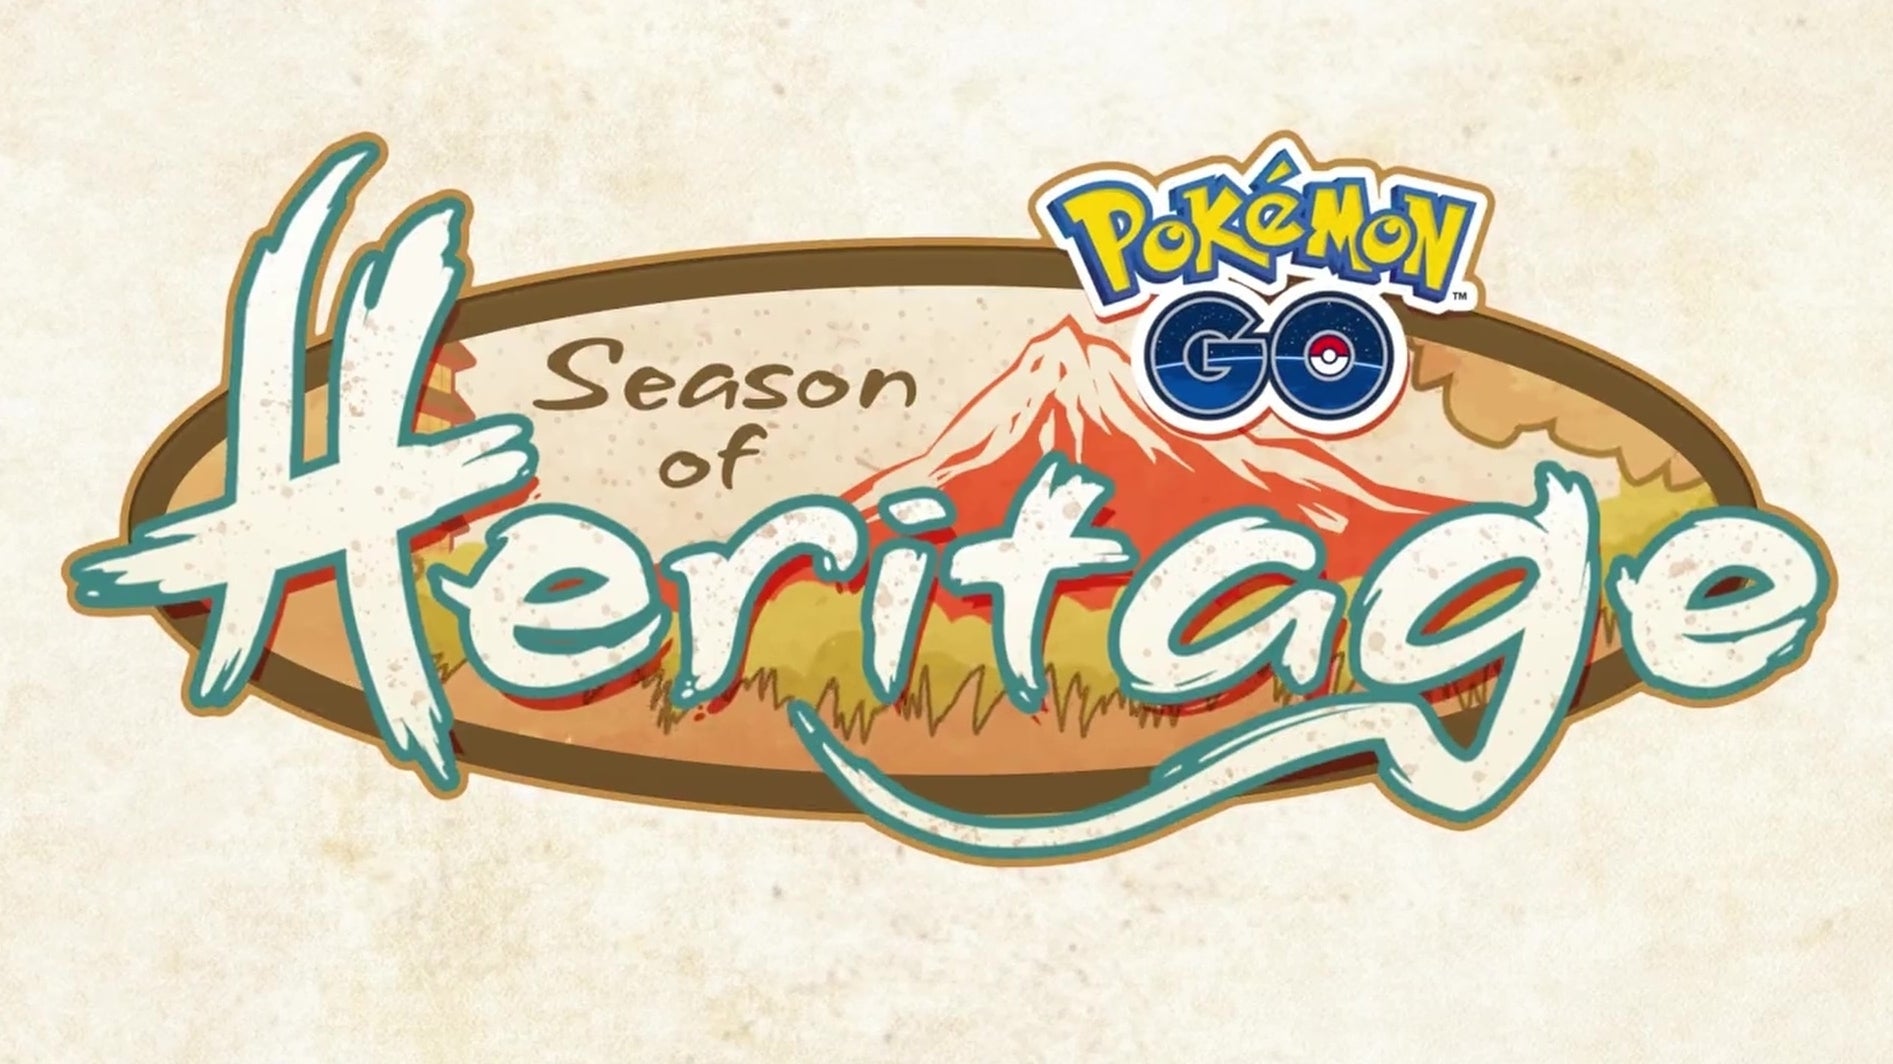 Imagem para Pokémon Go - Temporada de Legado - datas, horários, Pokémon em destaque, Legends Arceus